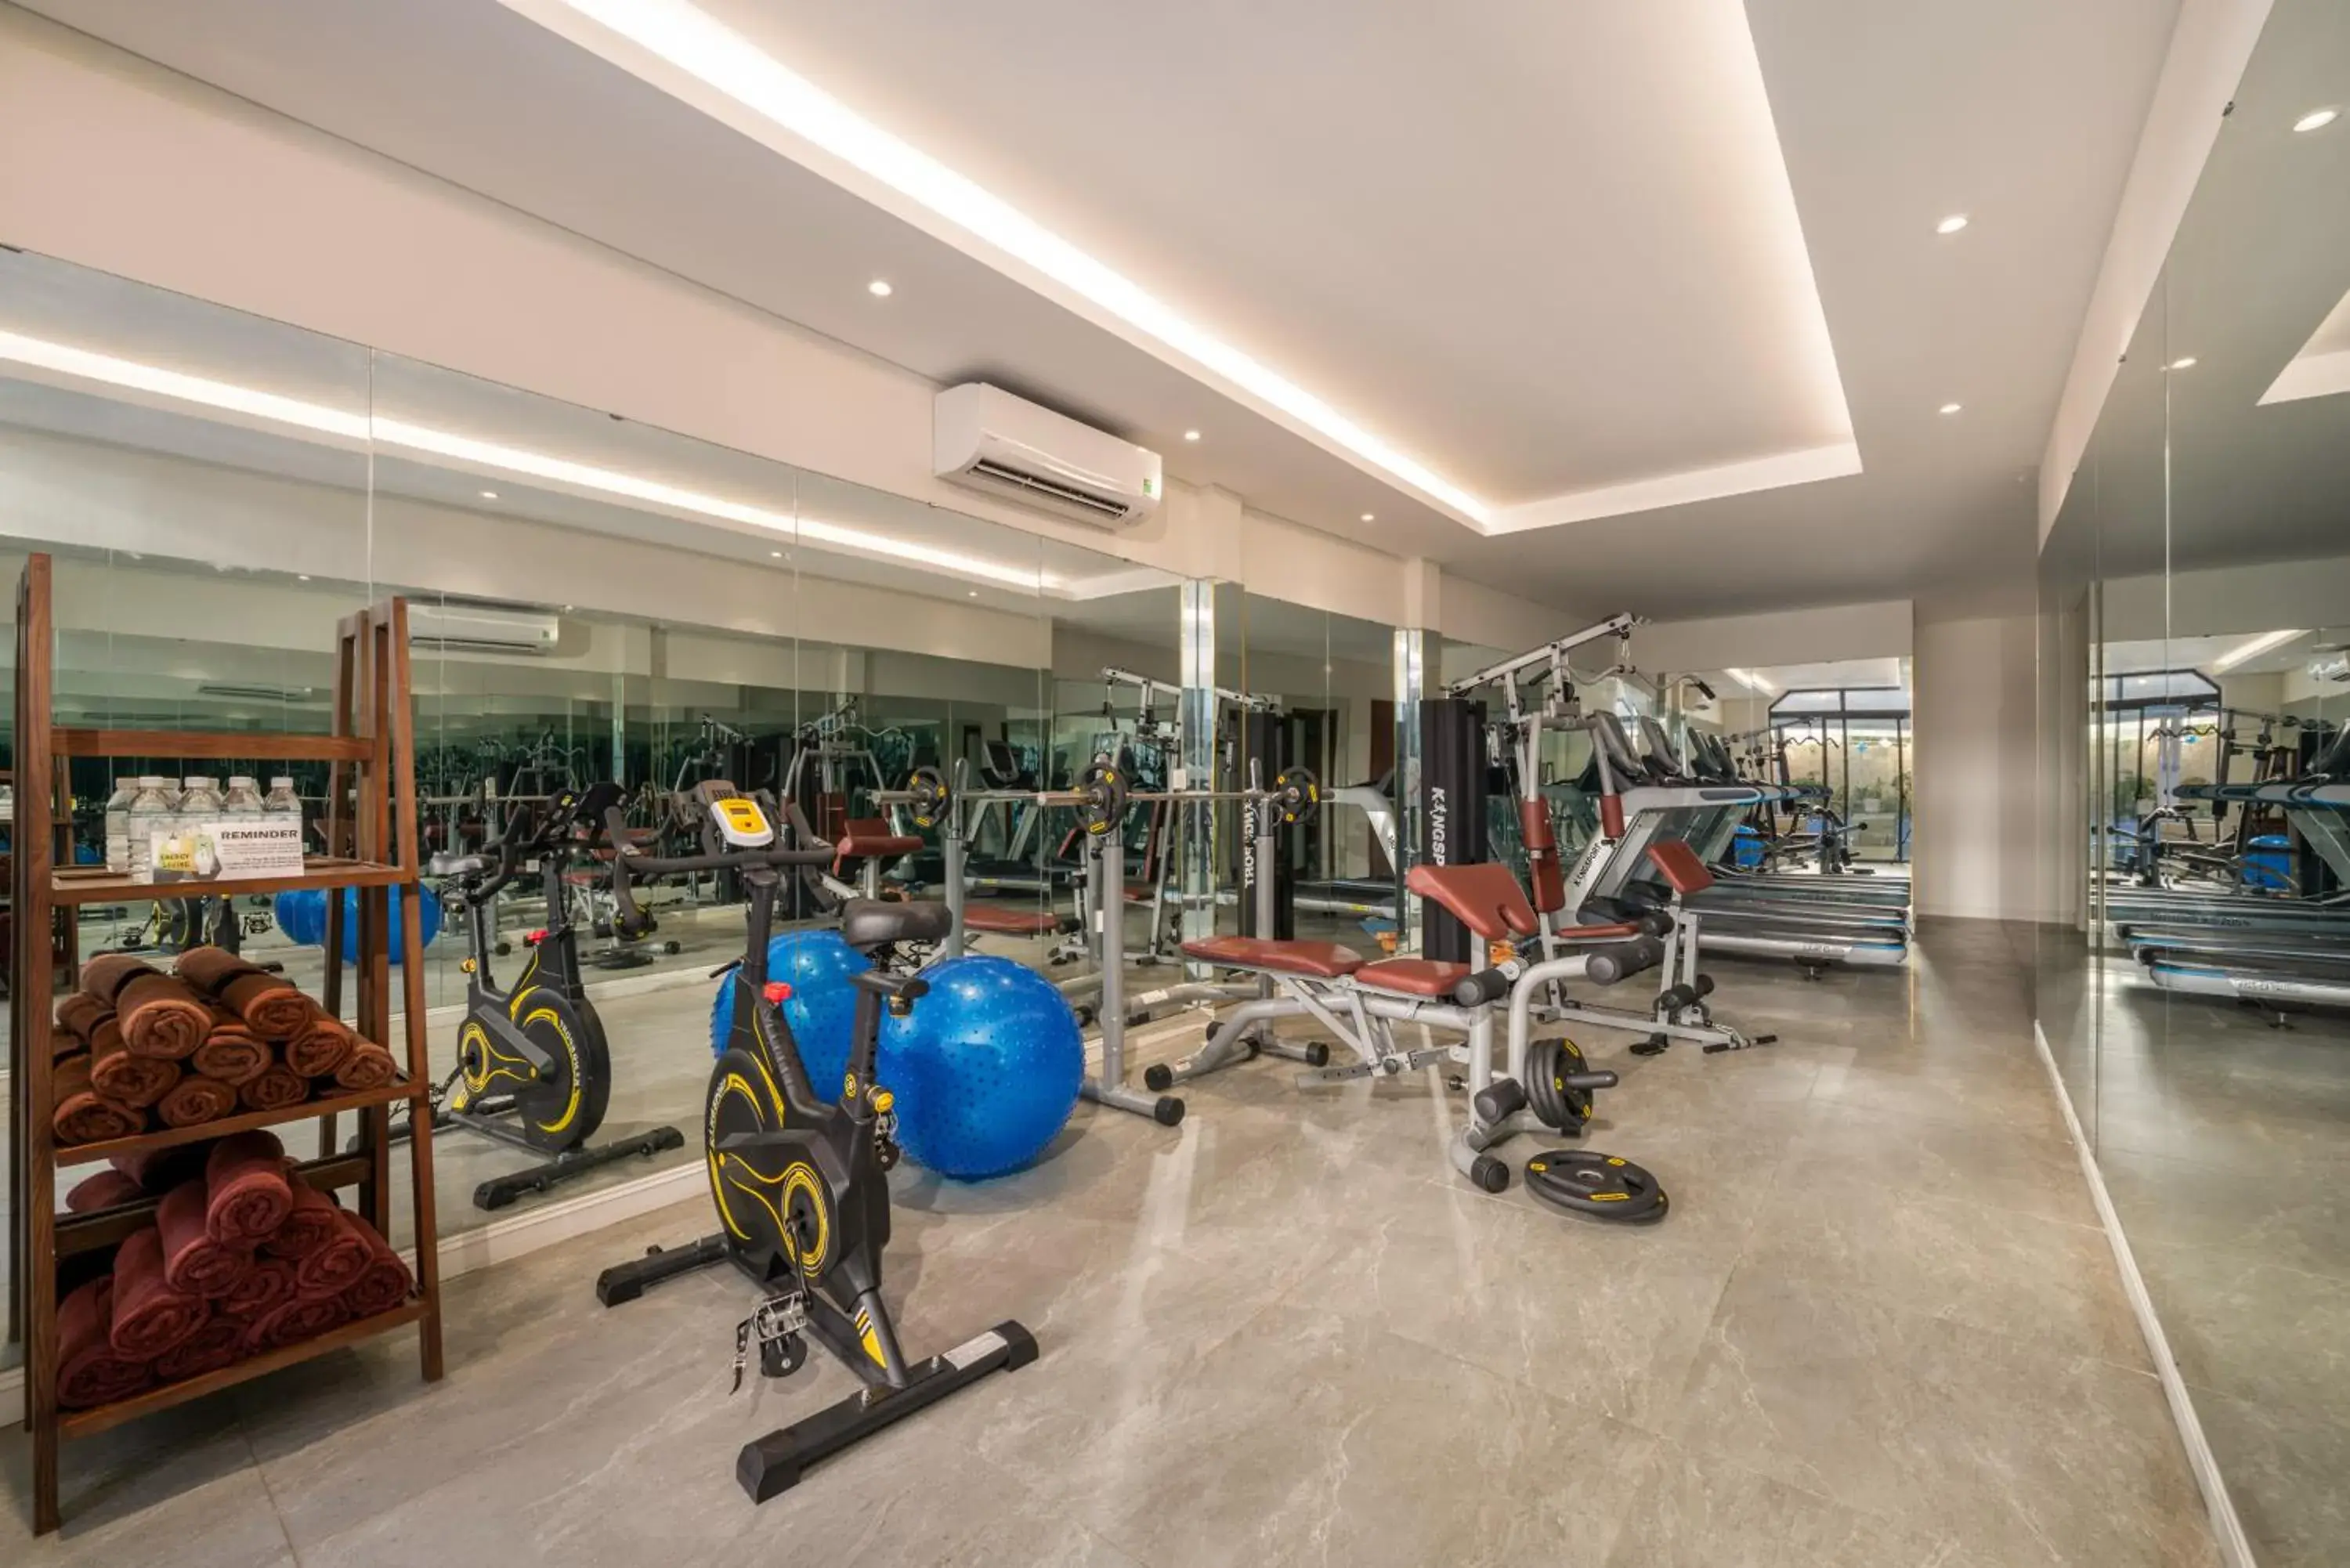 Fitness centre/facilities, Fitness Center/Facilities in Amina Lantana Hoi An Hotel & Spa